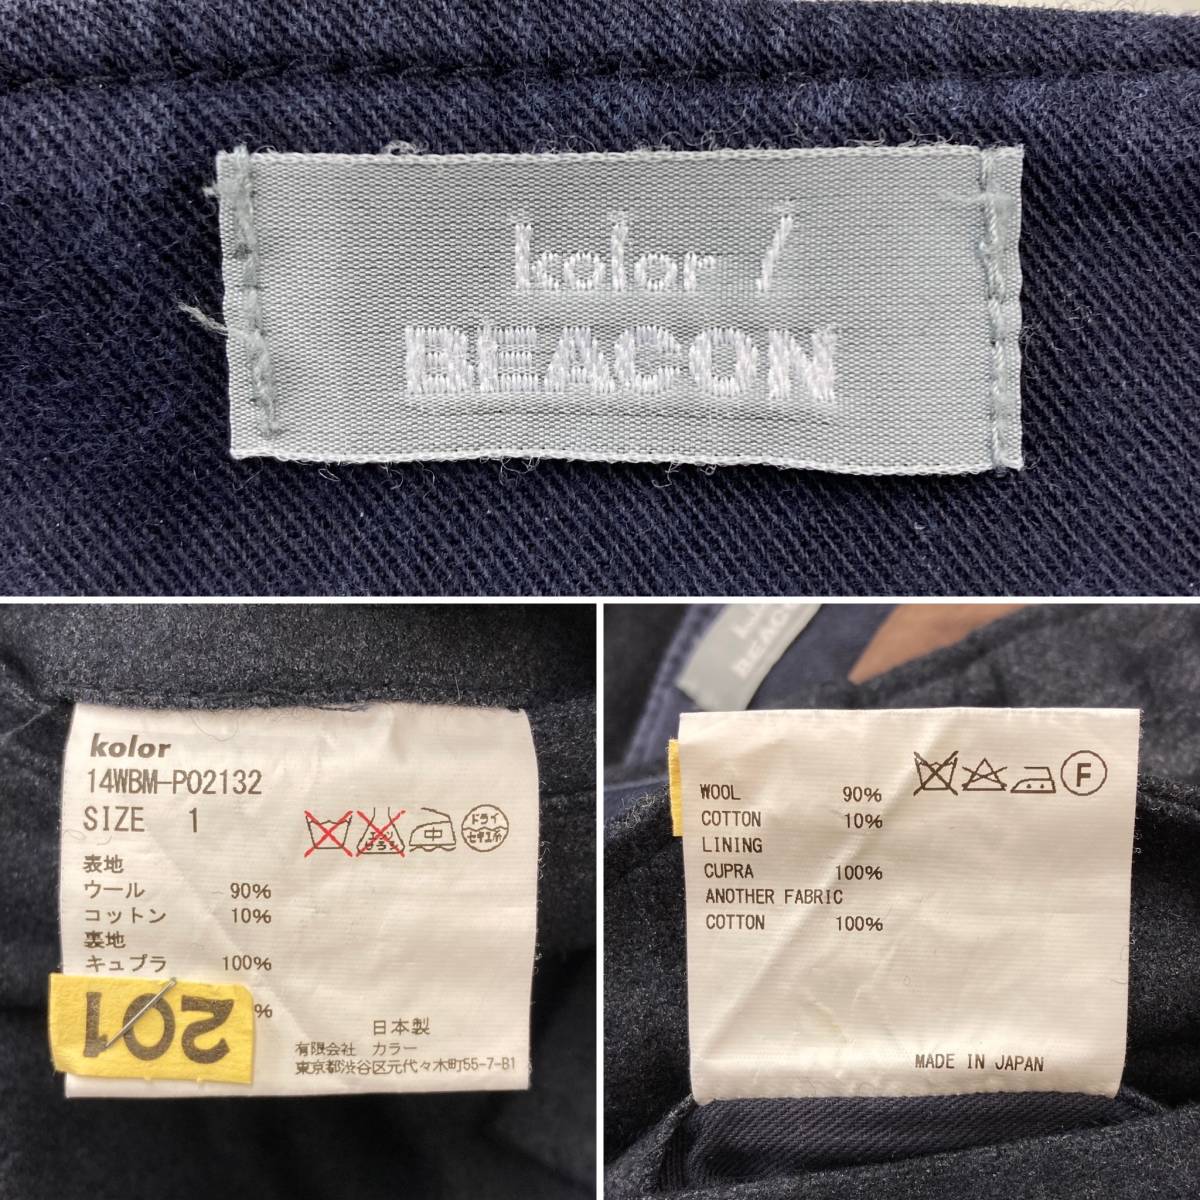 kolor BEACON 14AW ウール カーゴパンツ ネイビー 紺 1サイズ 14WBM-P02132 カラー ビーコン パンツ スラックス 3090333_画像3